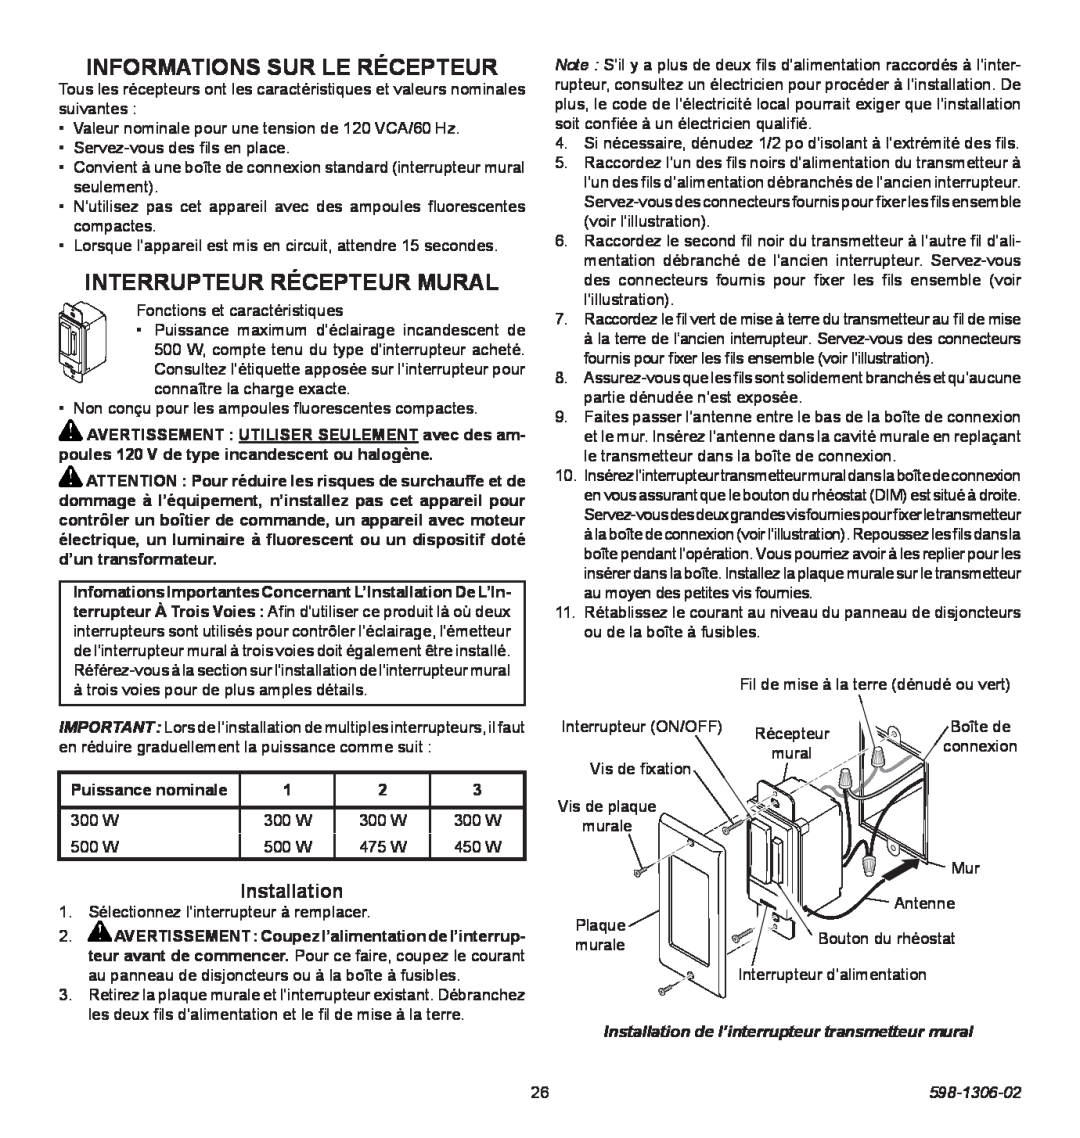 Heath Zenith 598-1306-02 manual Informations Sur Le Récepteur, Interrupteur Récepteur Mural, Installation 